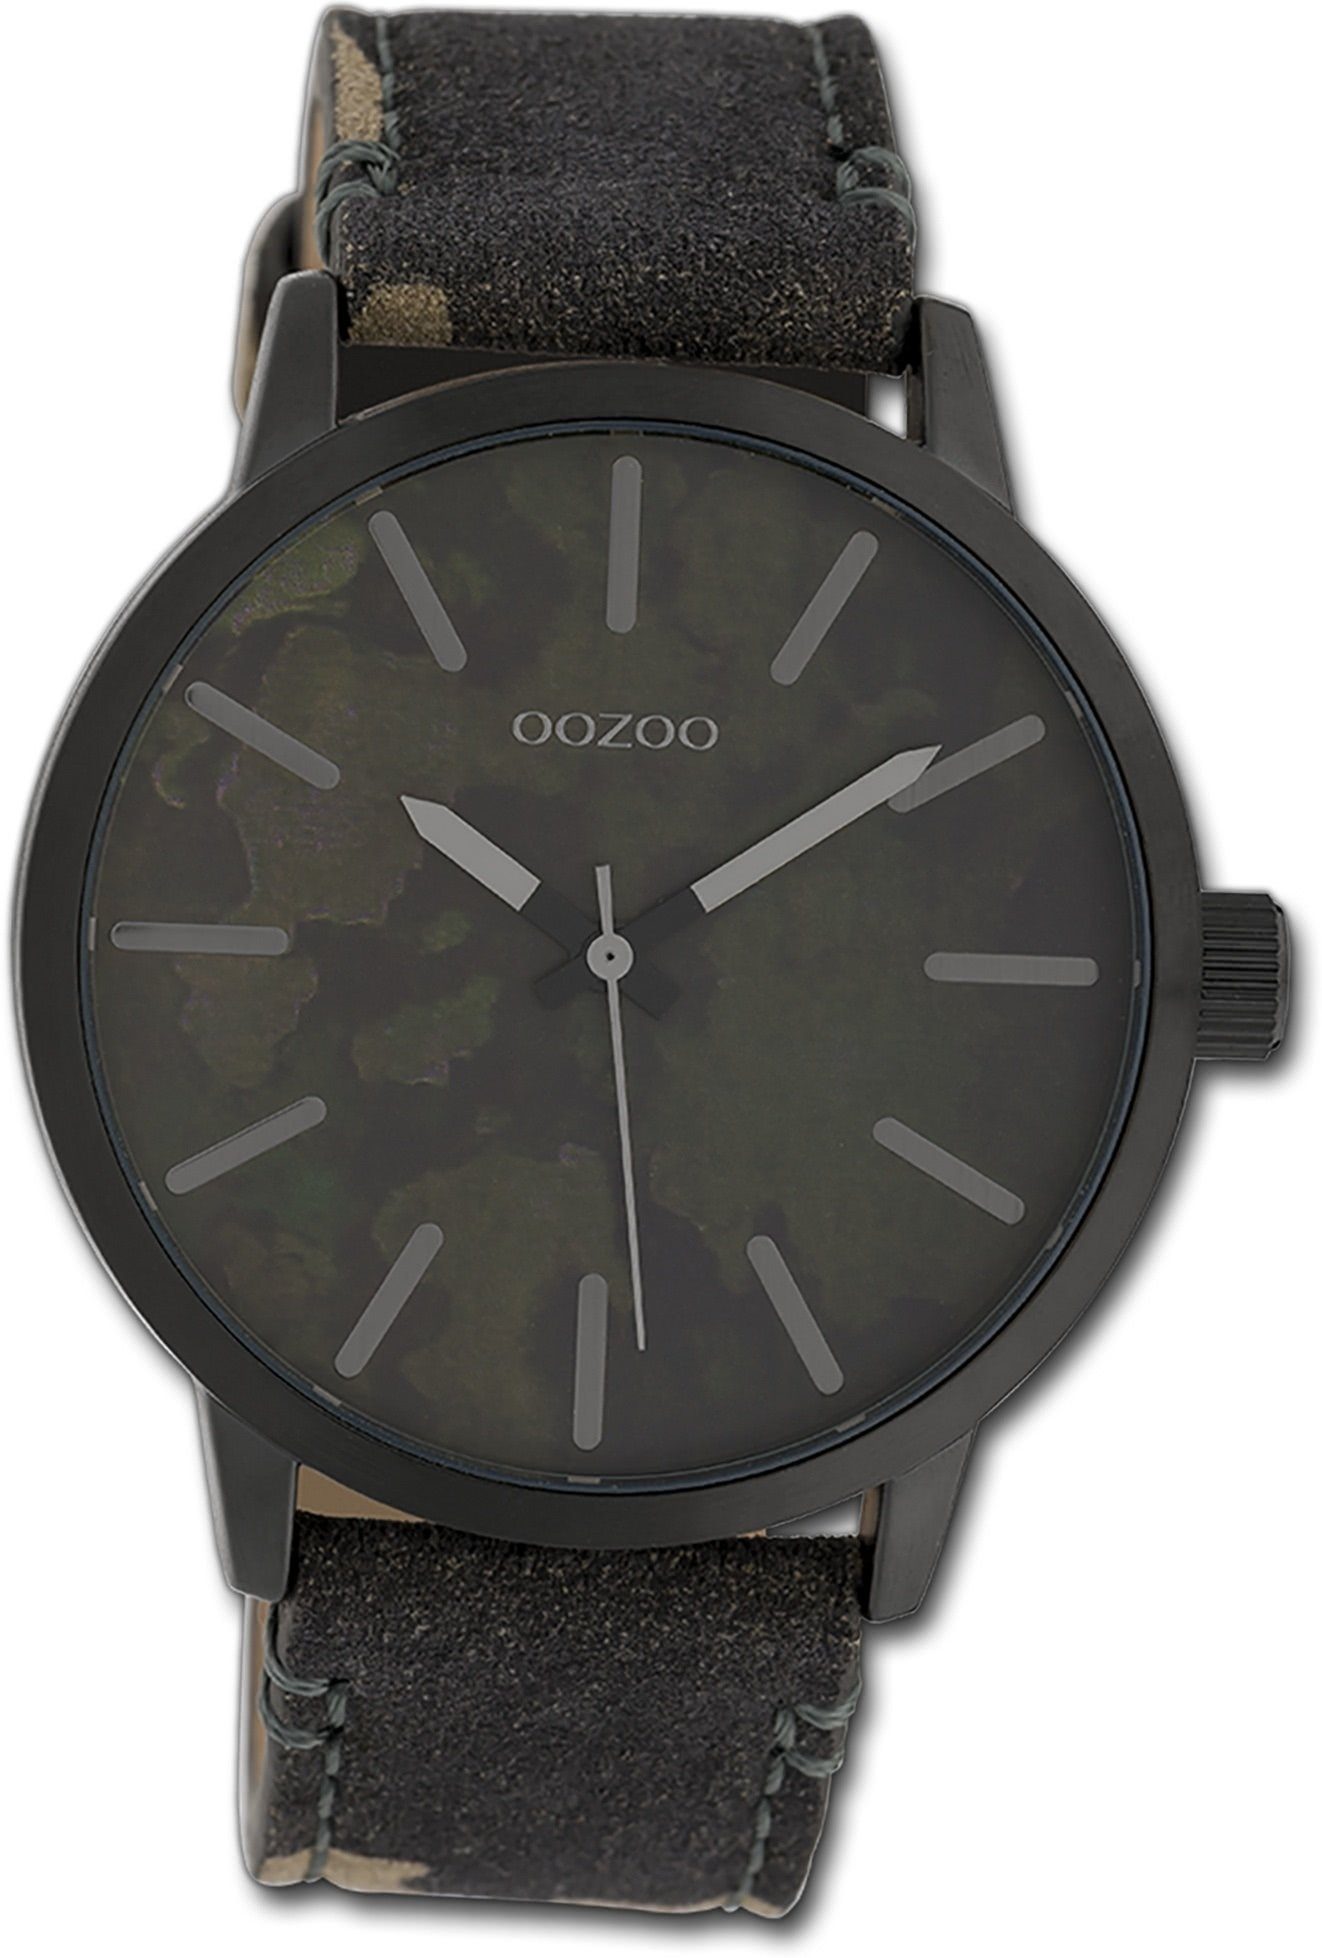 OOZOO Quarzuhr Oozoo Unisex Armbanduhr Timepieces, Damen, Herrenuhr Textilarmband schwarz, braun, rundes Gehäuse, 45mm | Quarzuhren